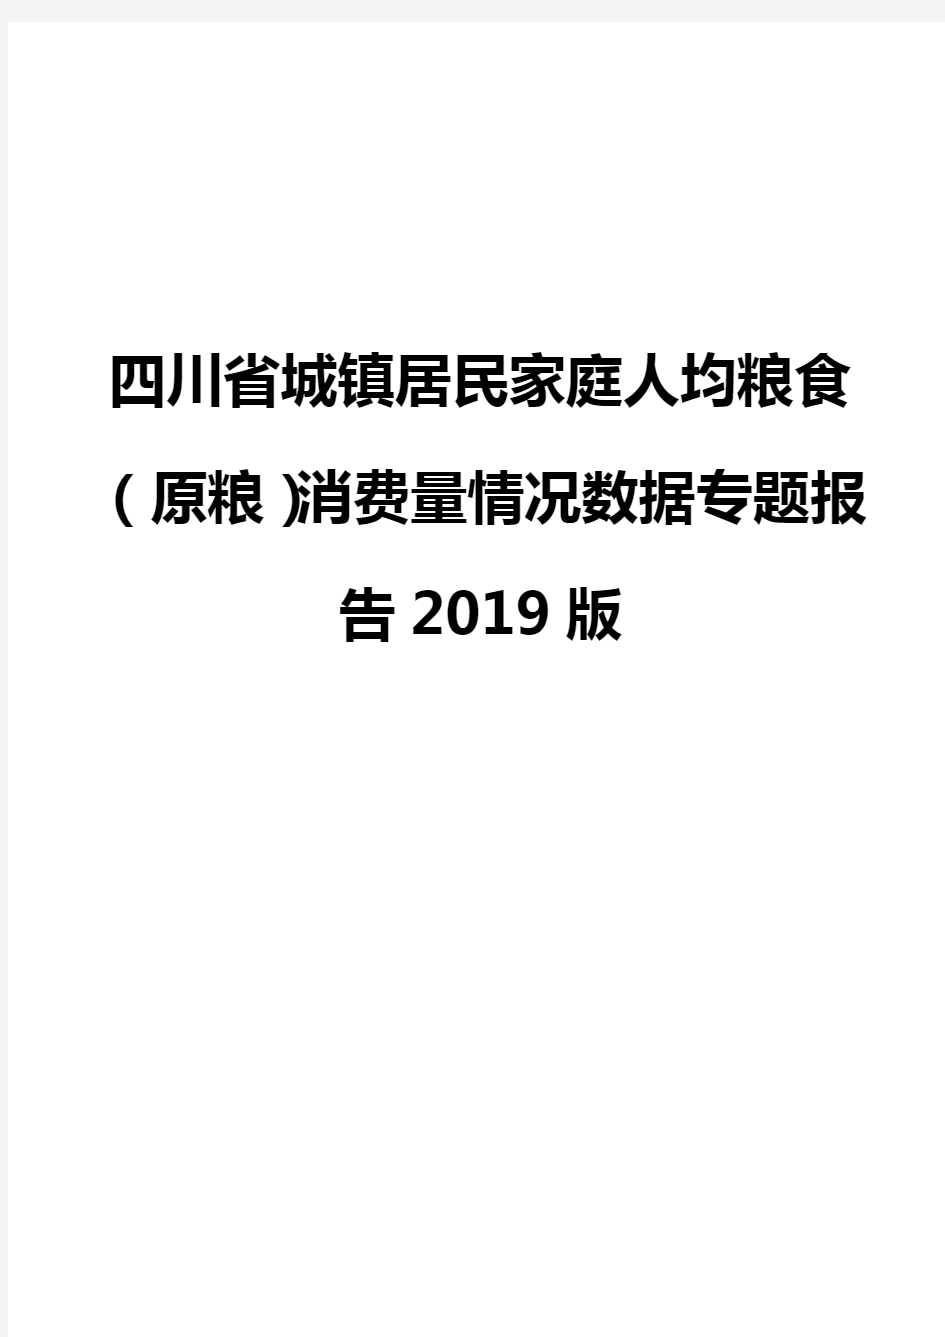 四川省城镇居民家庭人均粮食(原粮)消费量情况数据专题报告2019版